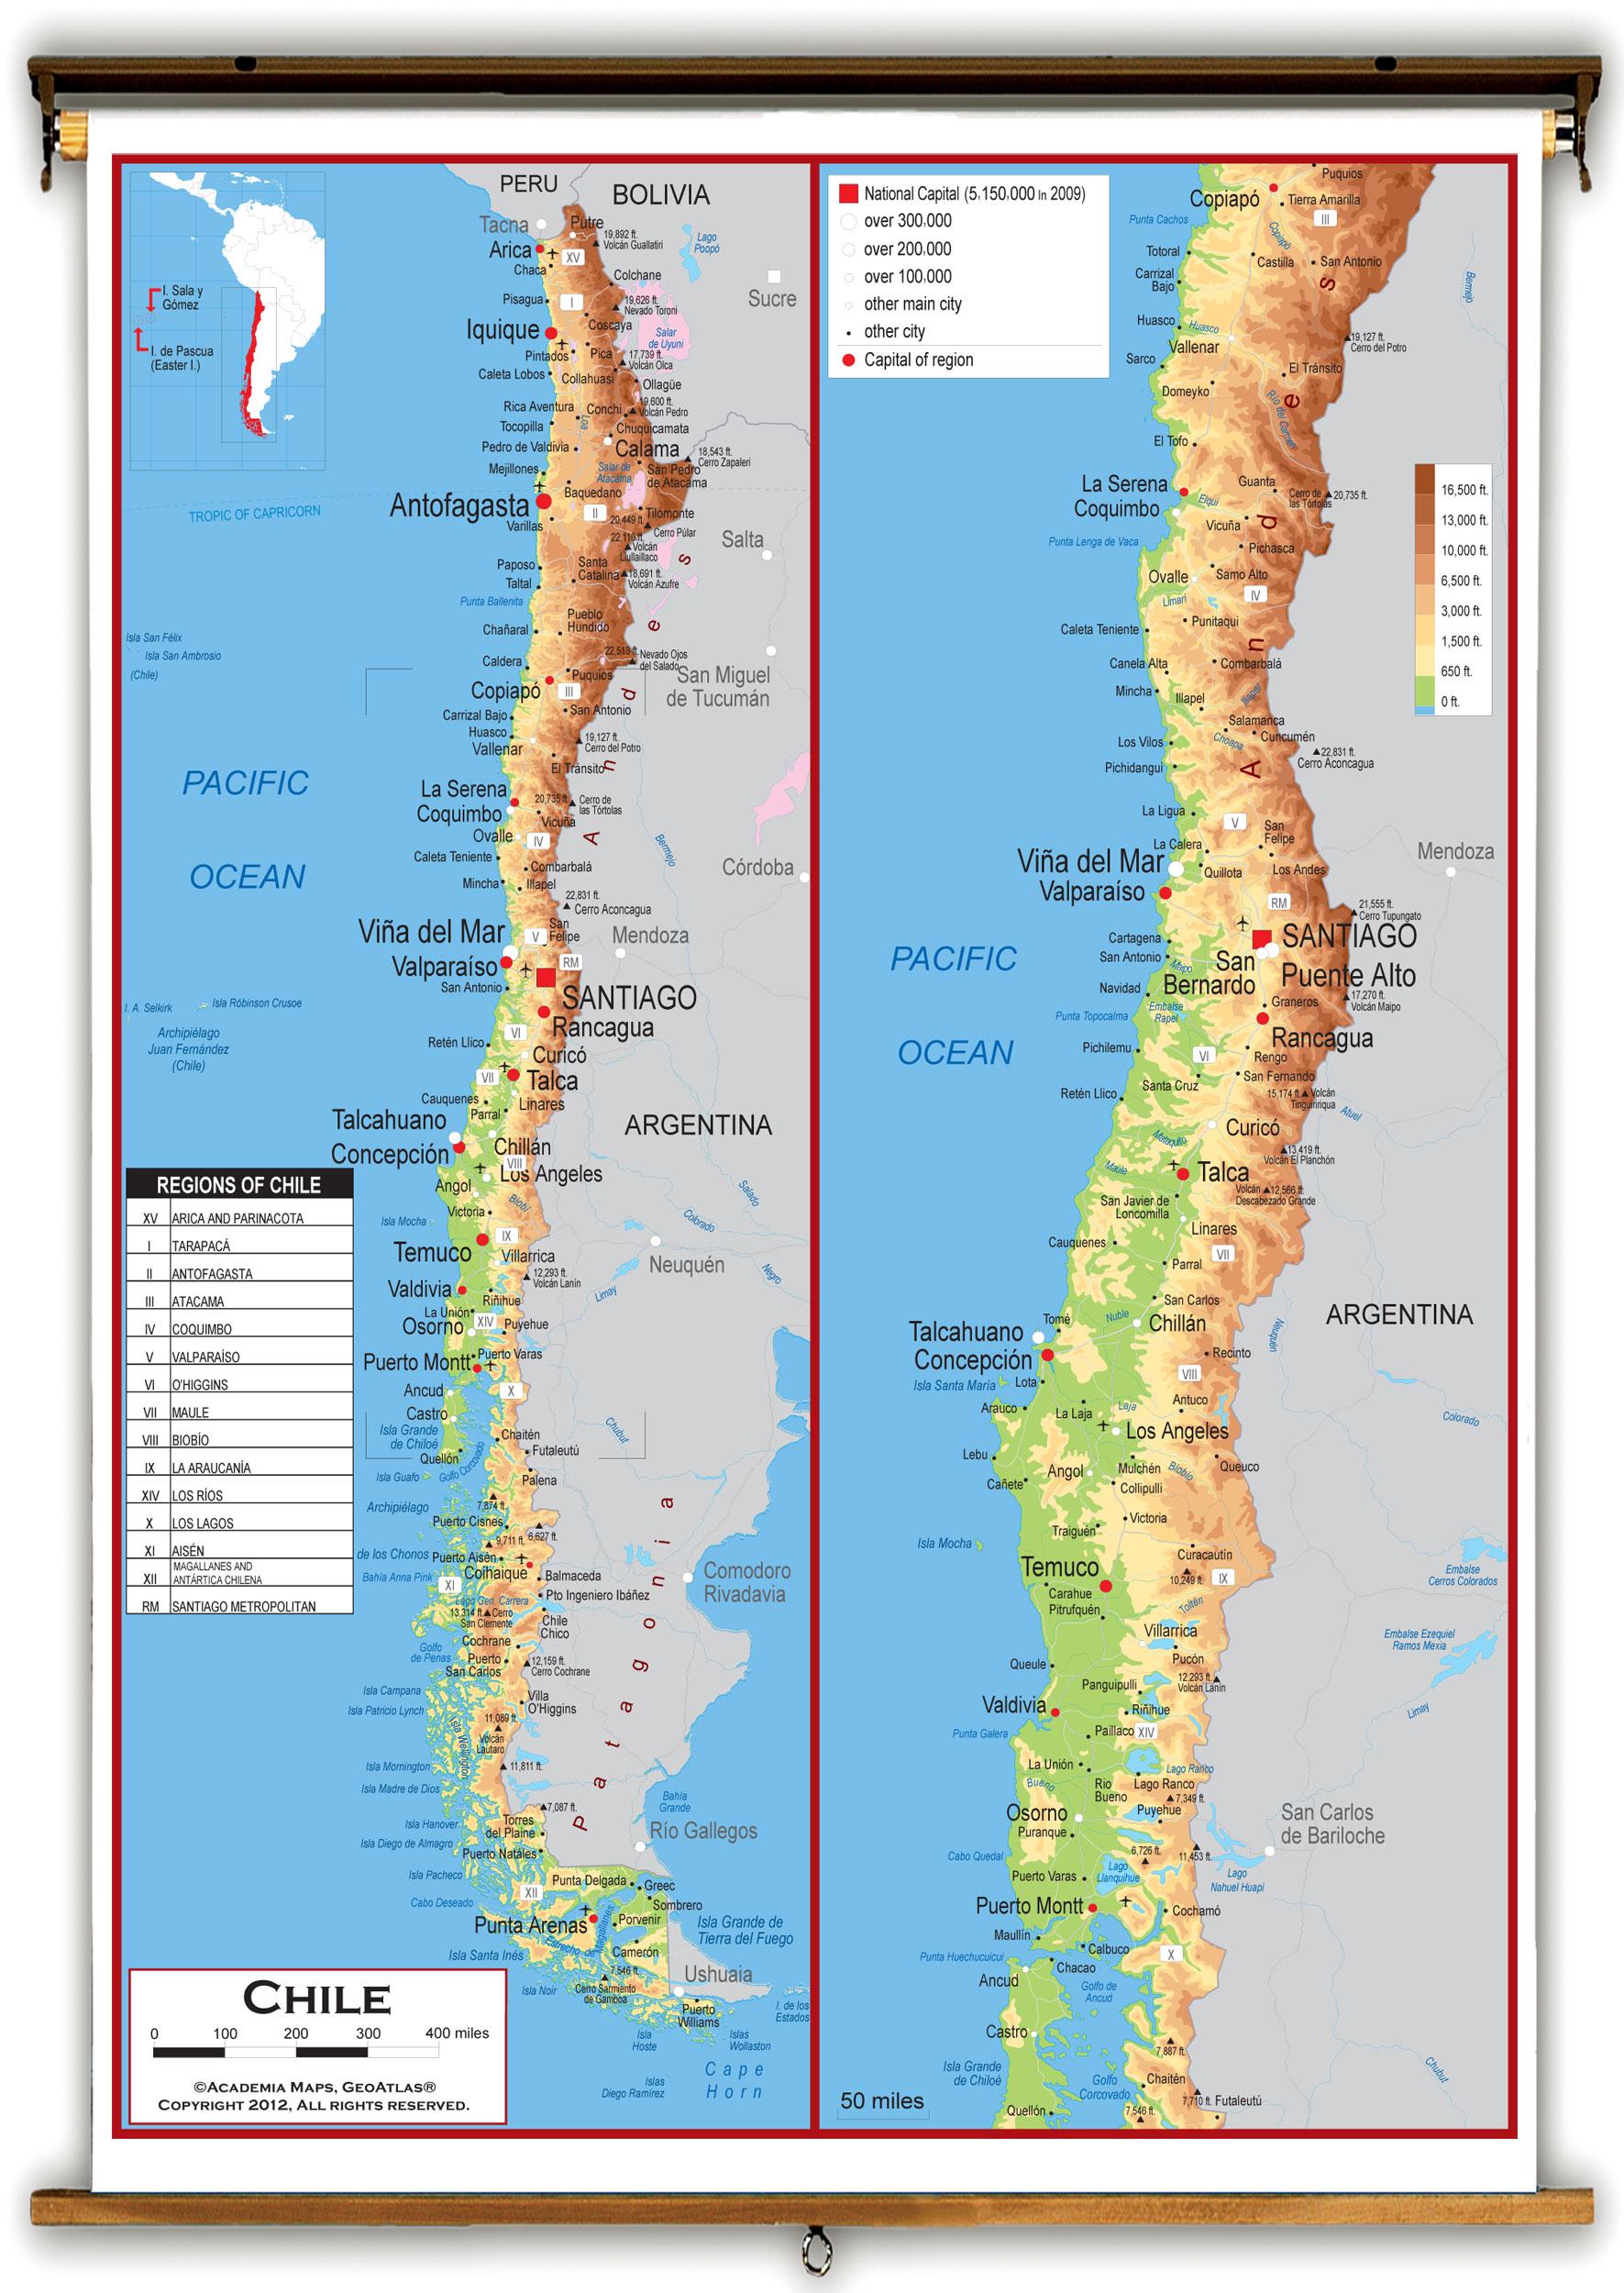 智利这个国家是如何印刷全国地图的?